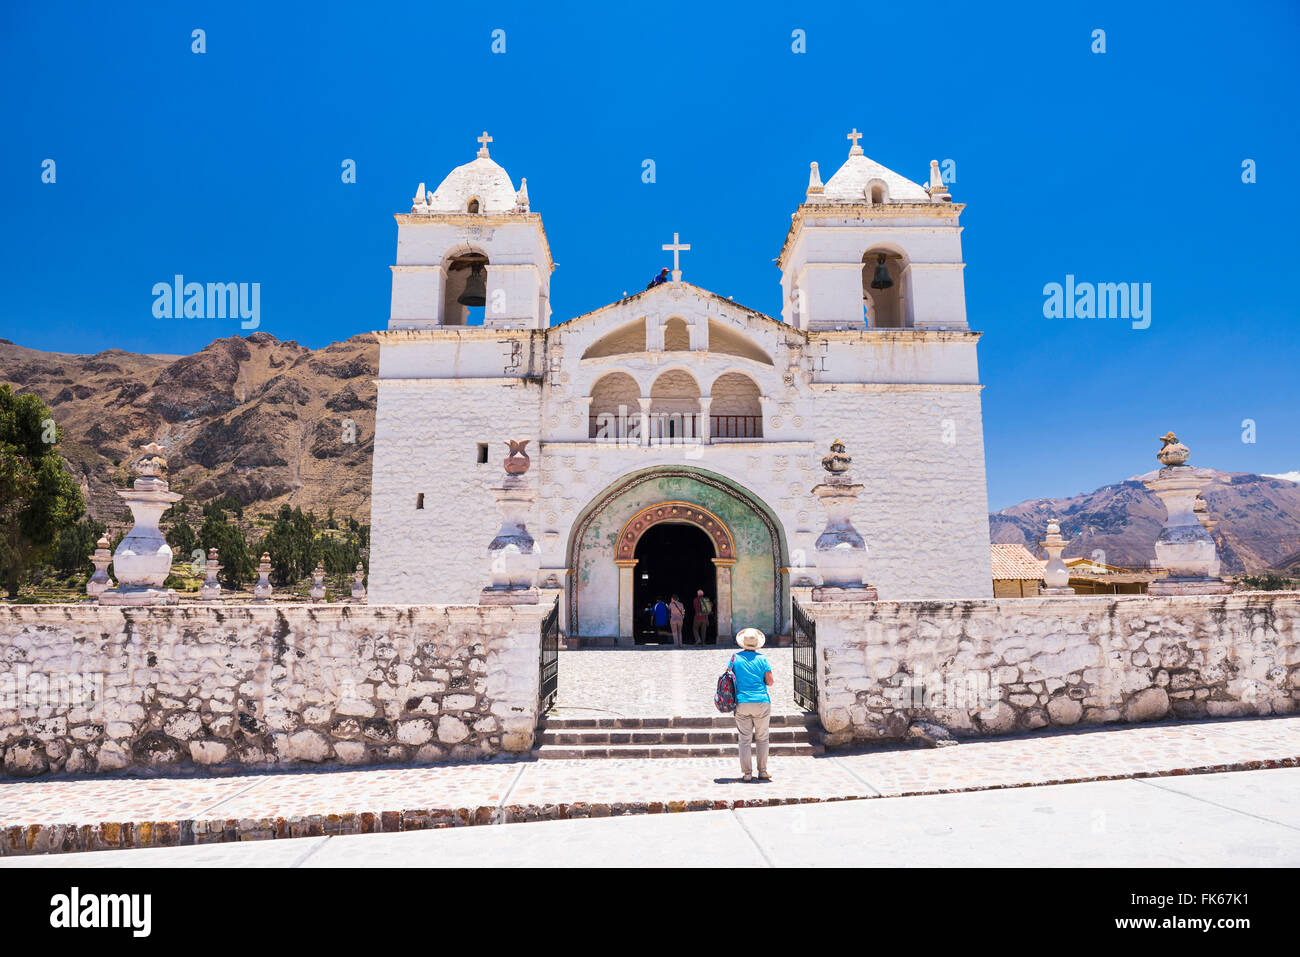 Eglise de Santa Ana de la maca, une église à la maca, Canyon de Colca, Pérou, Amérique du Sud Banque D'Images